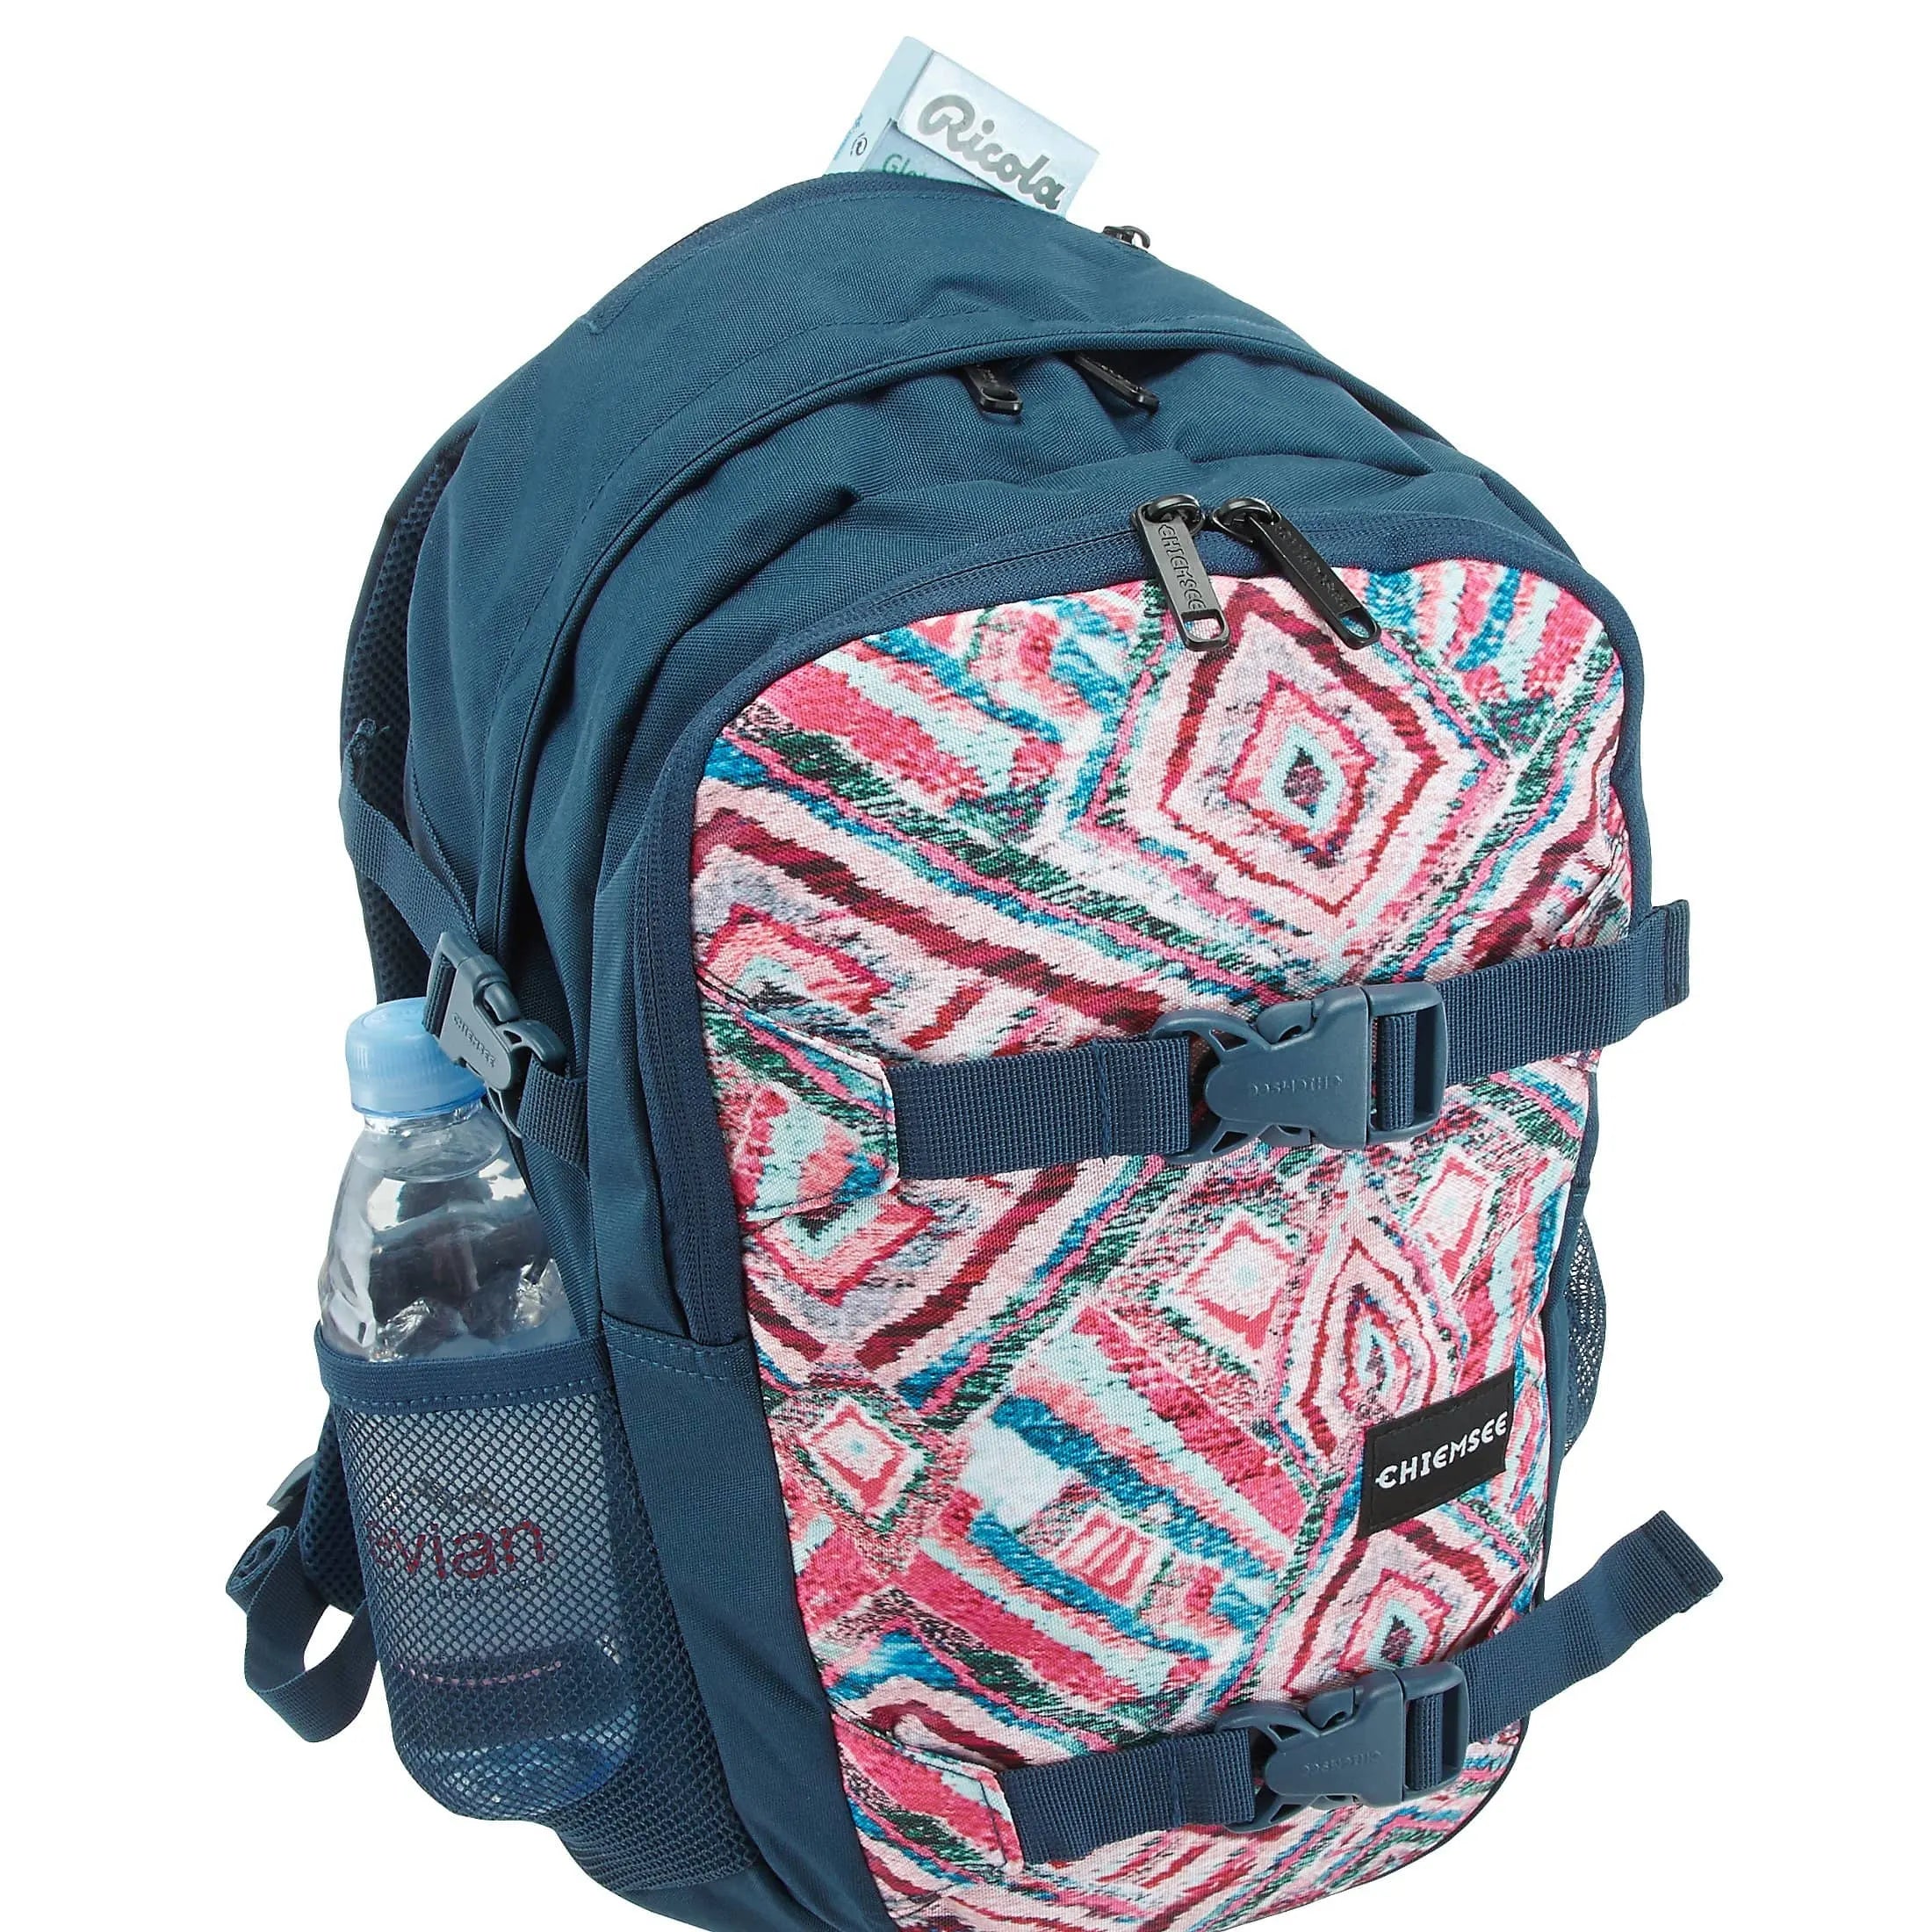 Chiemsee Sports & Travel Bags School Rucksack 48 cm - ocean